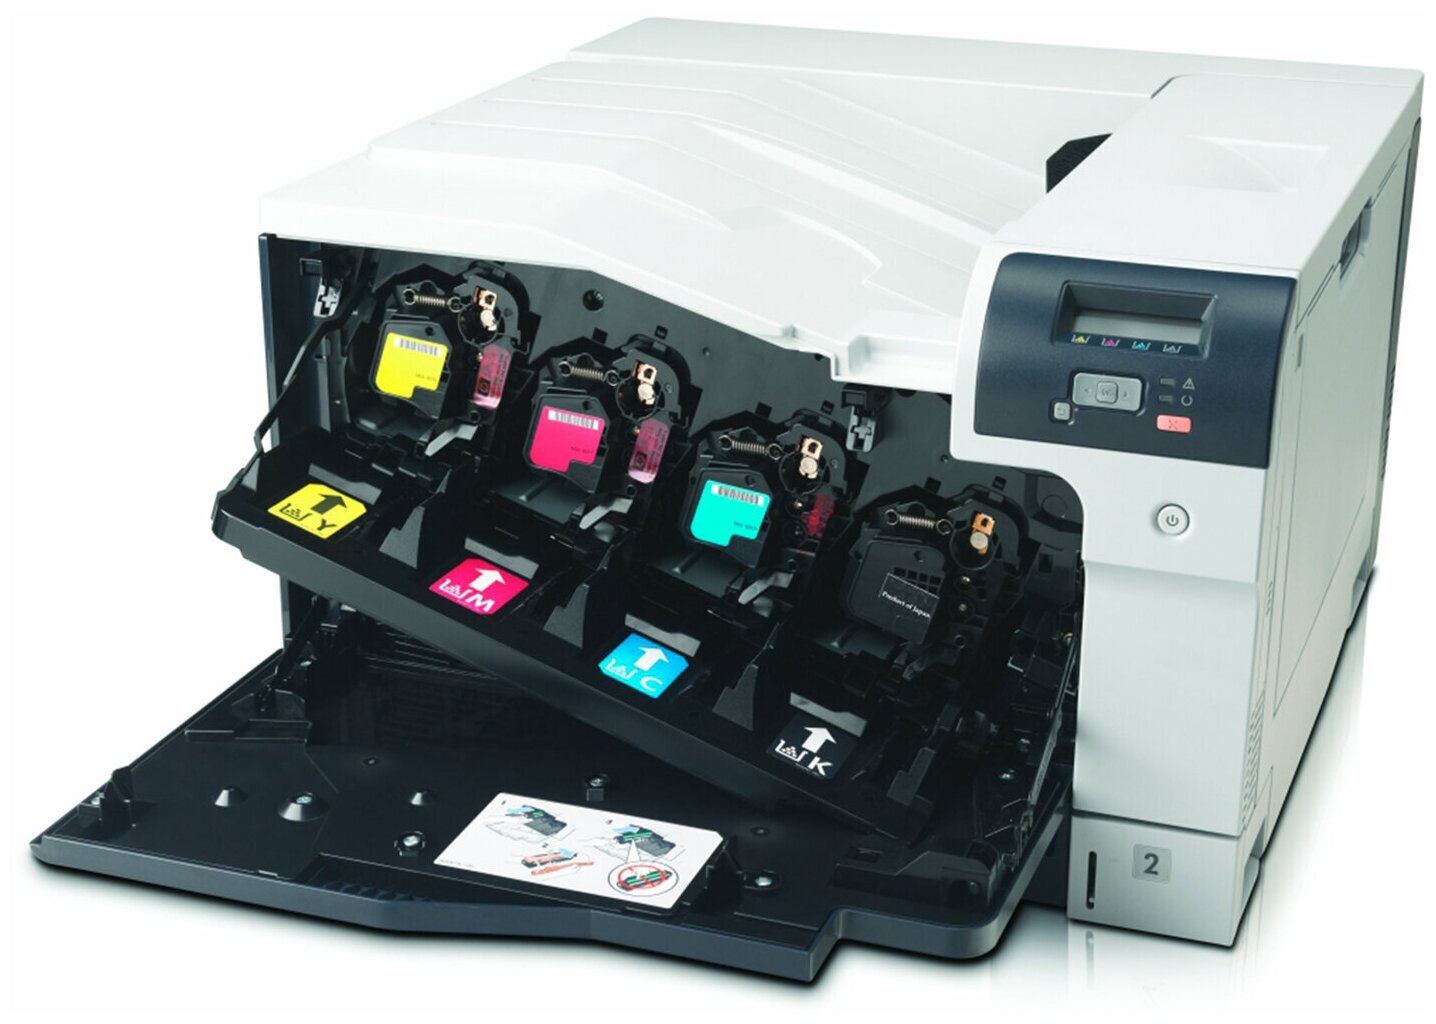 Принтер лазерный HP - фото №7